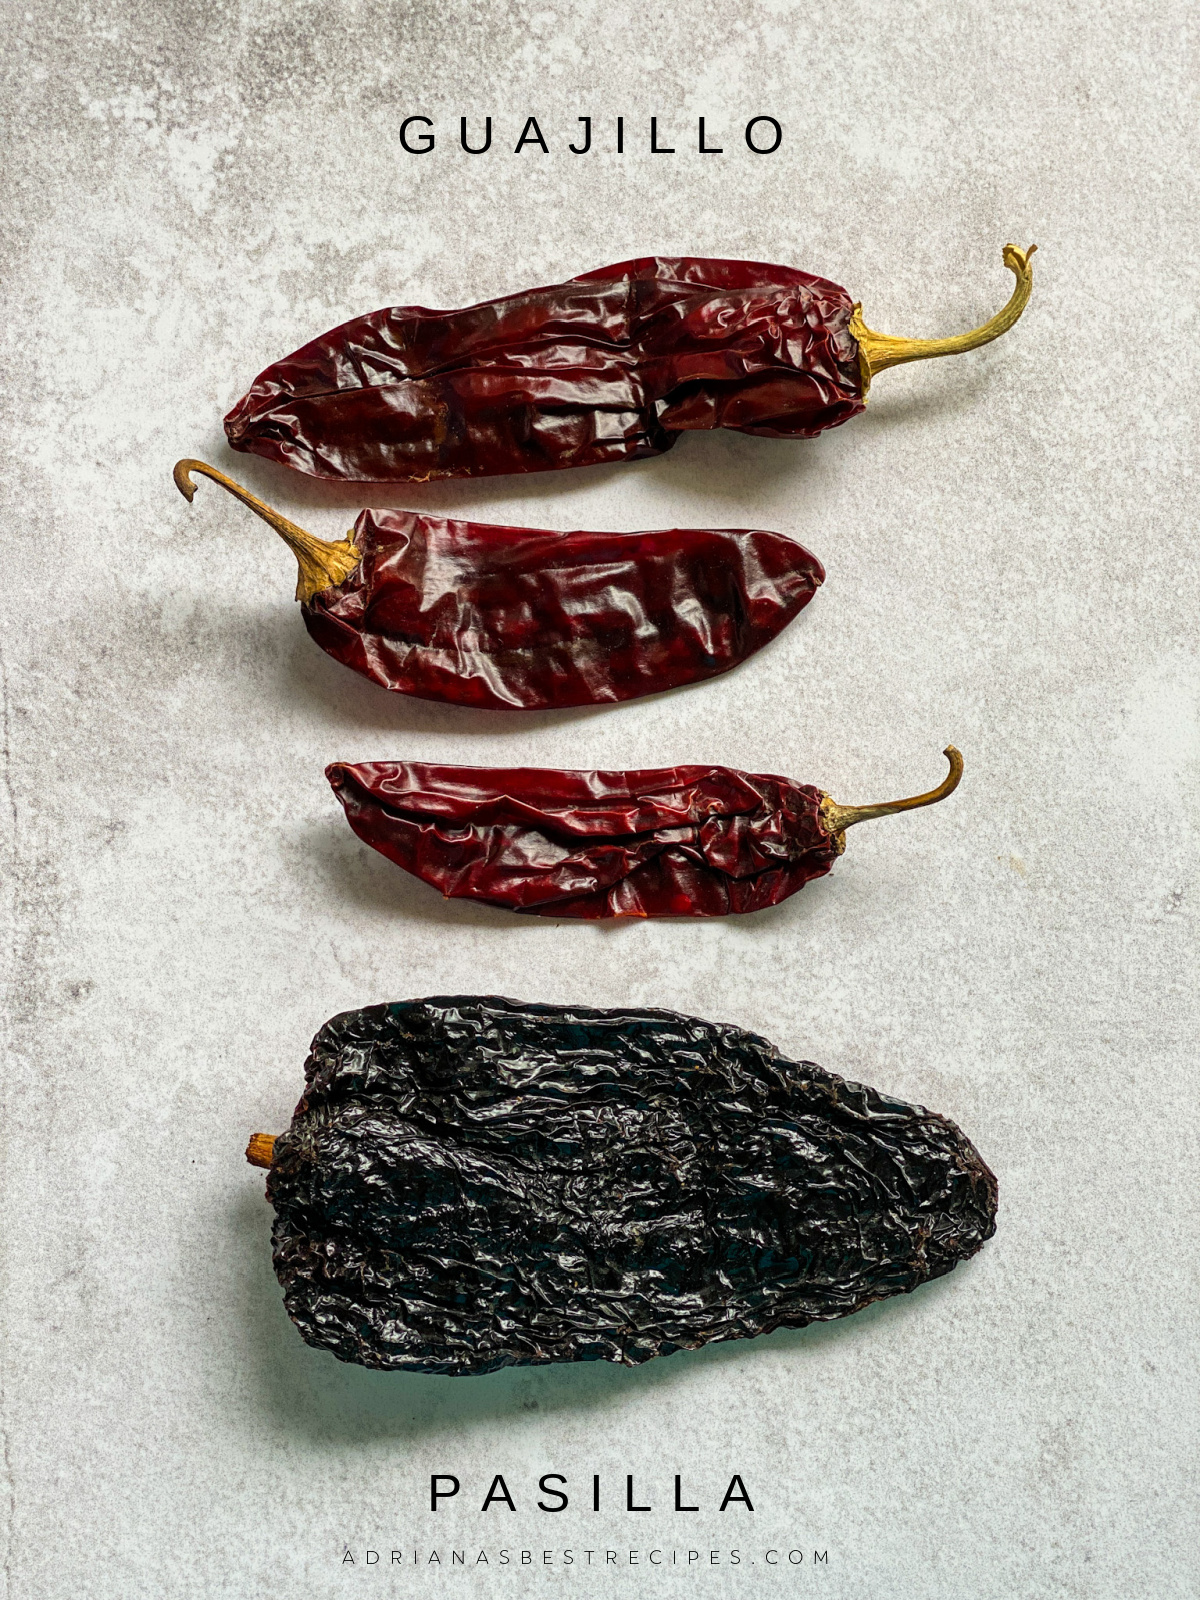 guajillo and pasilla dried peppers